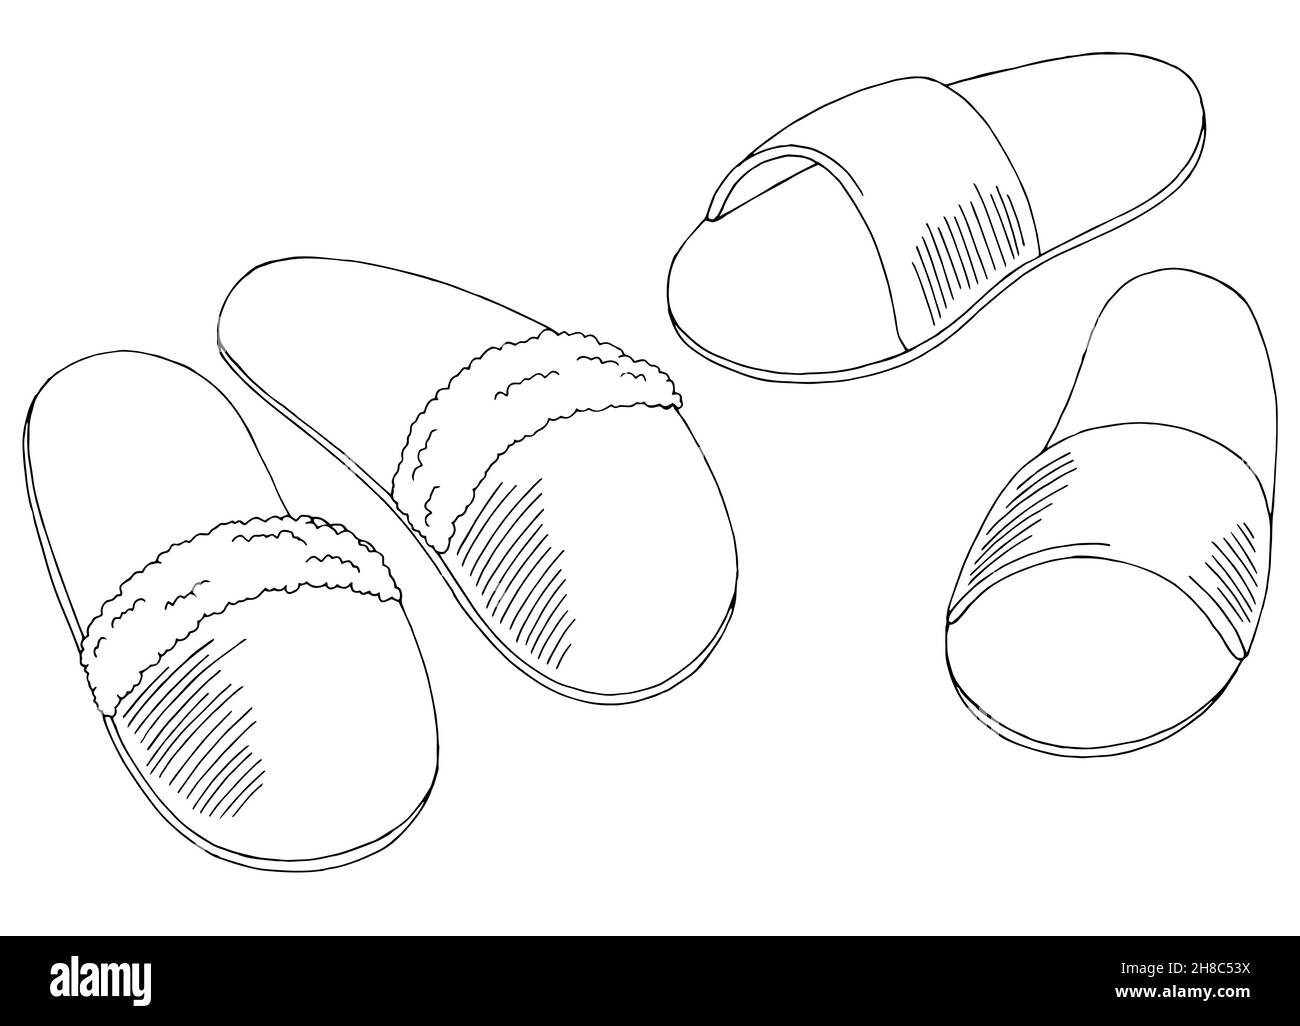 Sketch of slippers immagini e fotografie stock ad alta risoluzione - Alamy